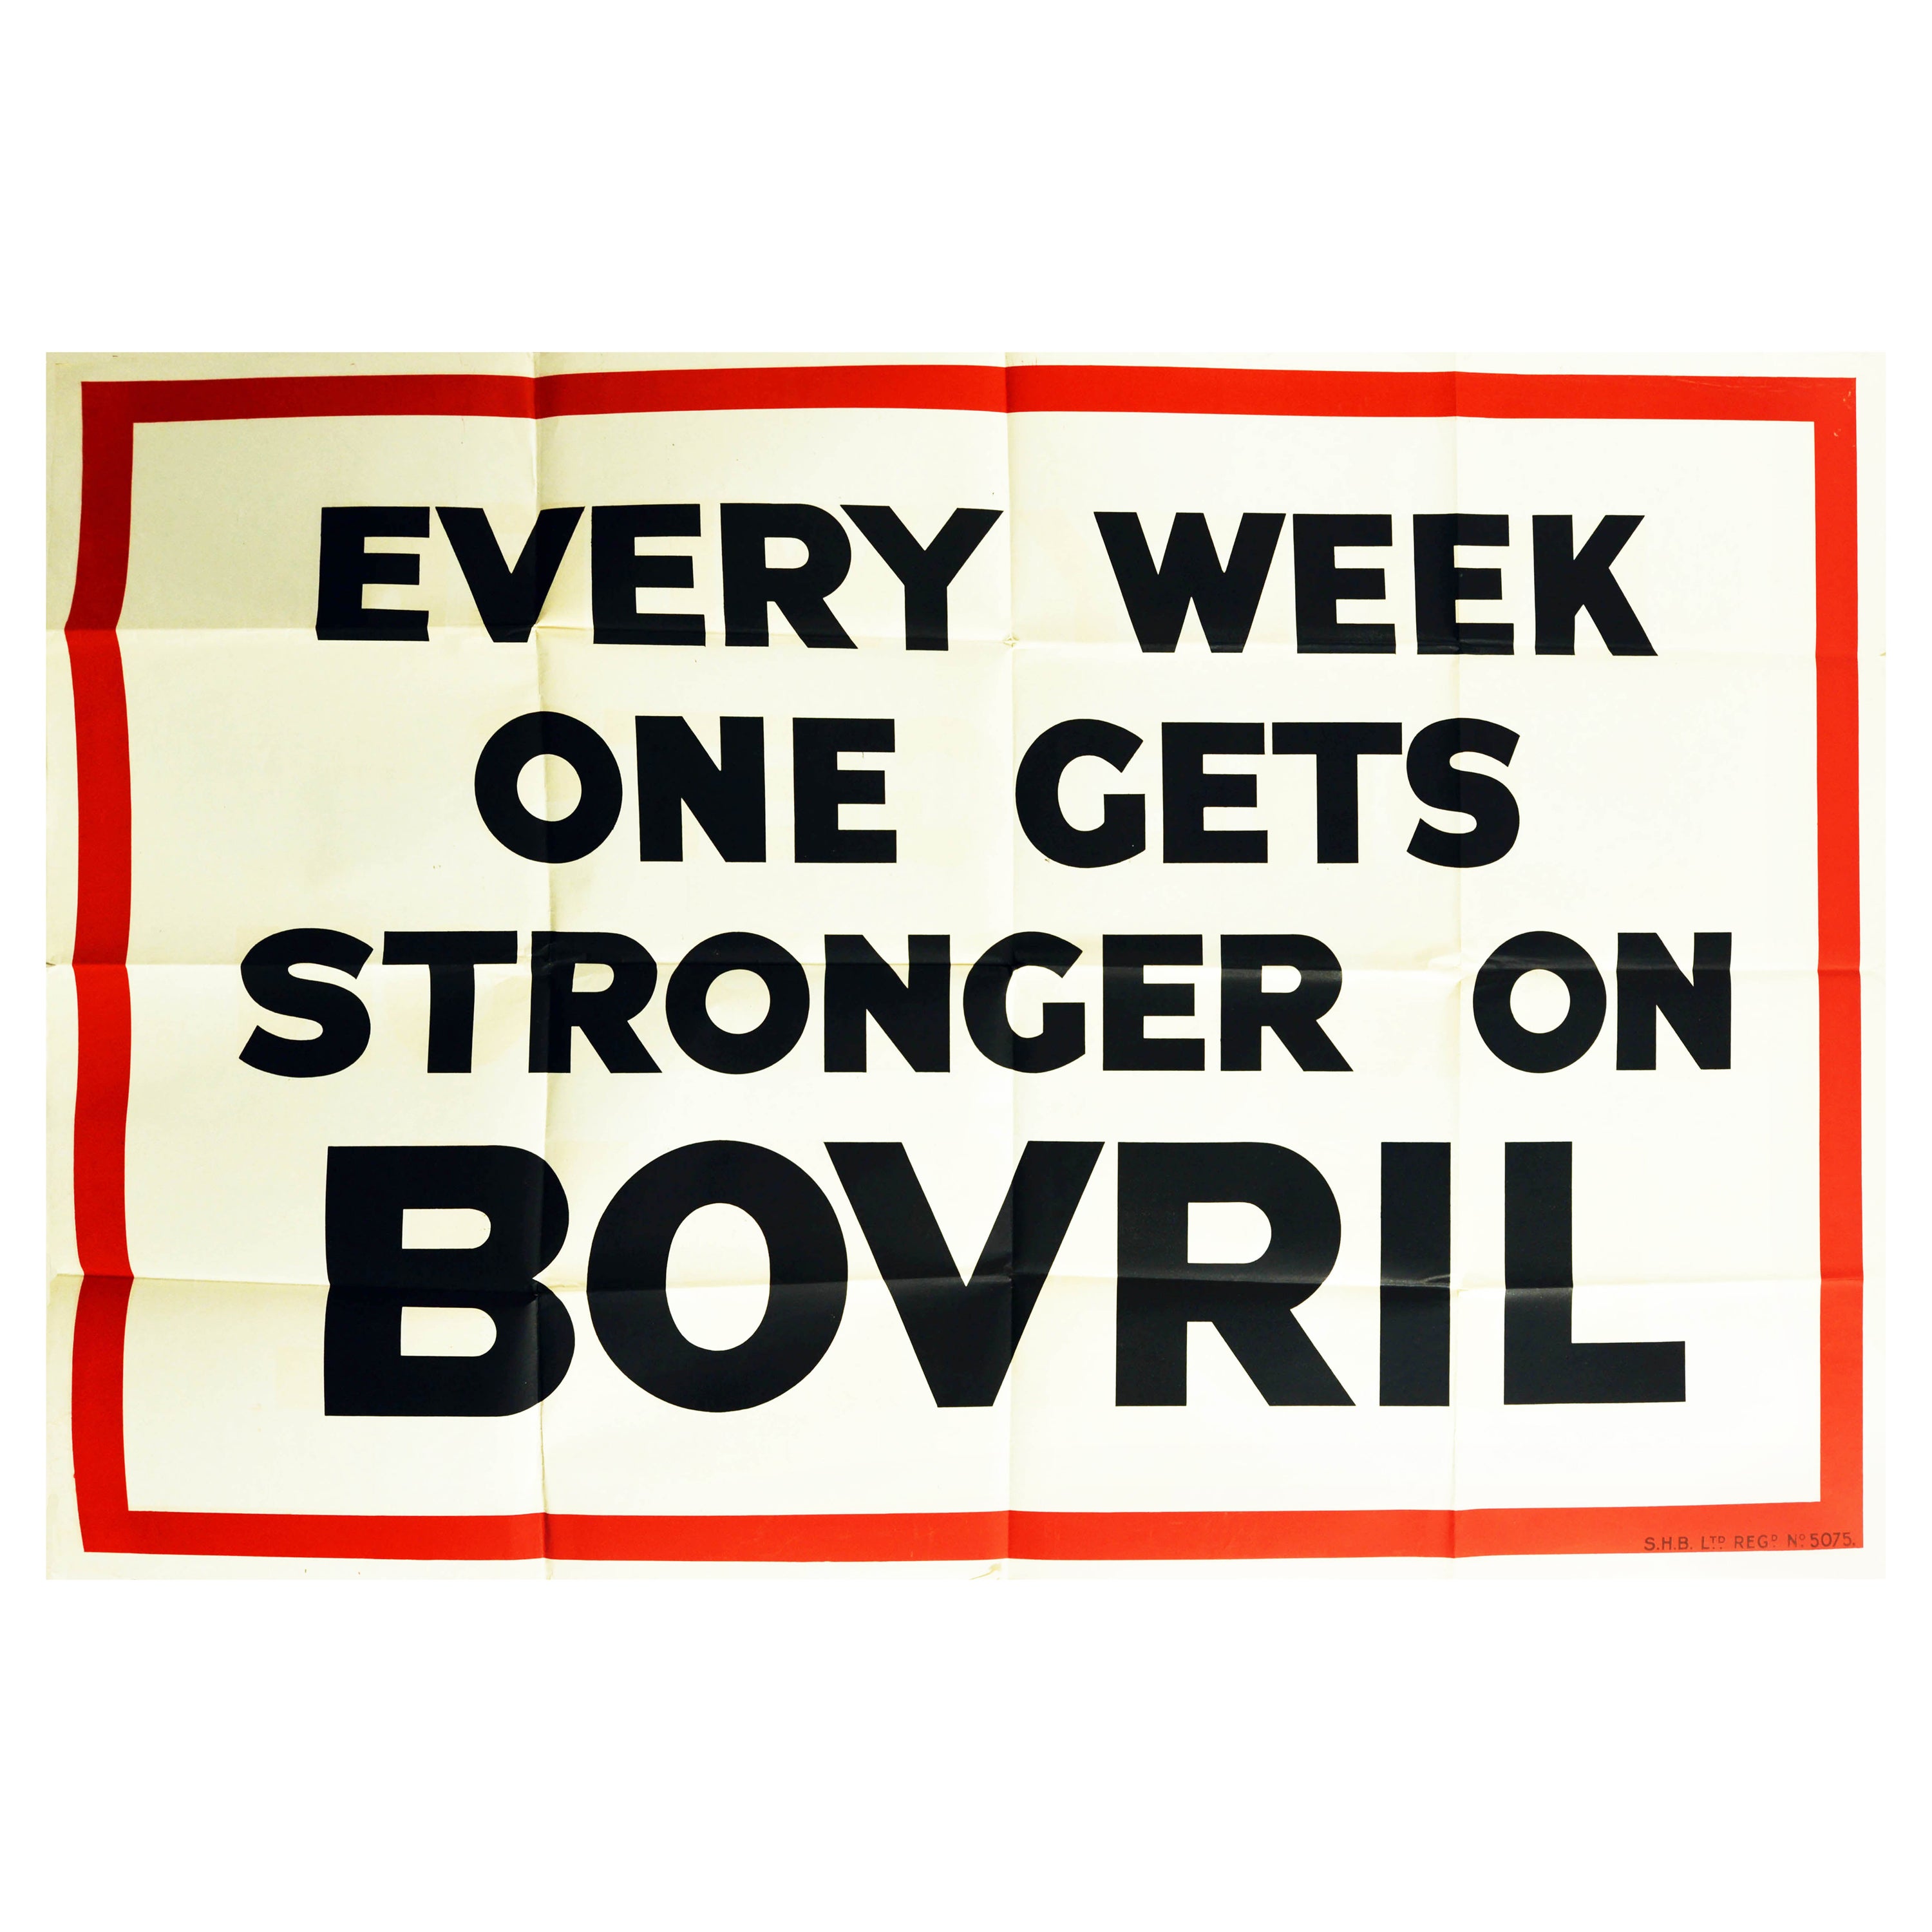 Original Vintage Poster Every Week One Gets Stronger On Bovril Hot Drink Food Ad